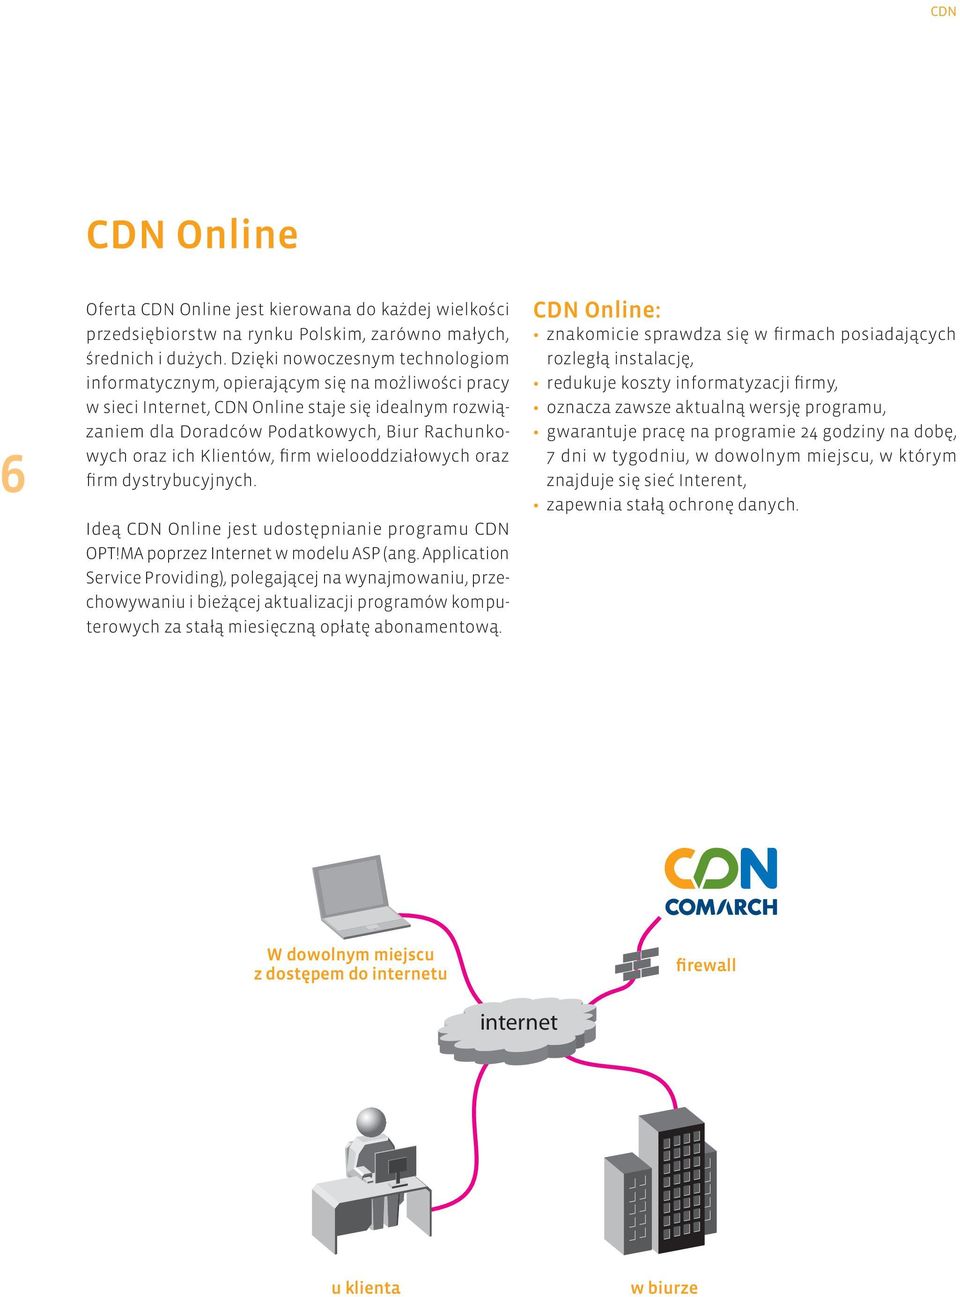 Klientów, firm wielooddziałowych oraz firm dystrybucyjnych. Ideą CDN Online jest udostępnianie programu CDN OPT!MA poprzez Internet w modelu ASP (ang.